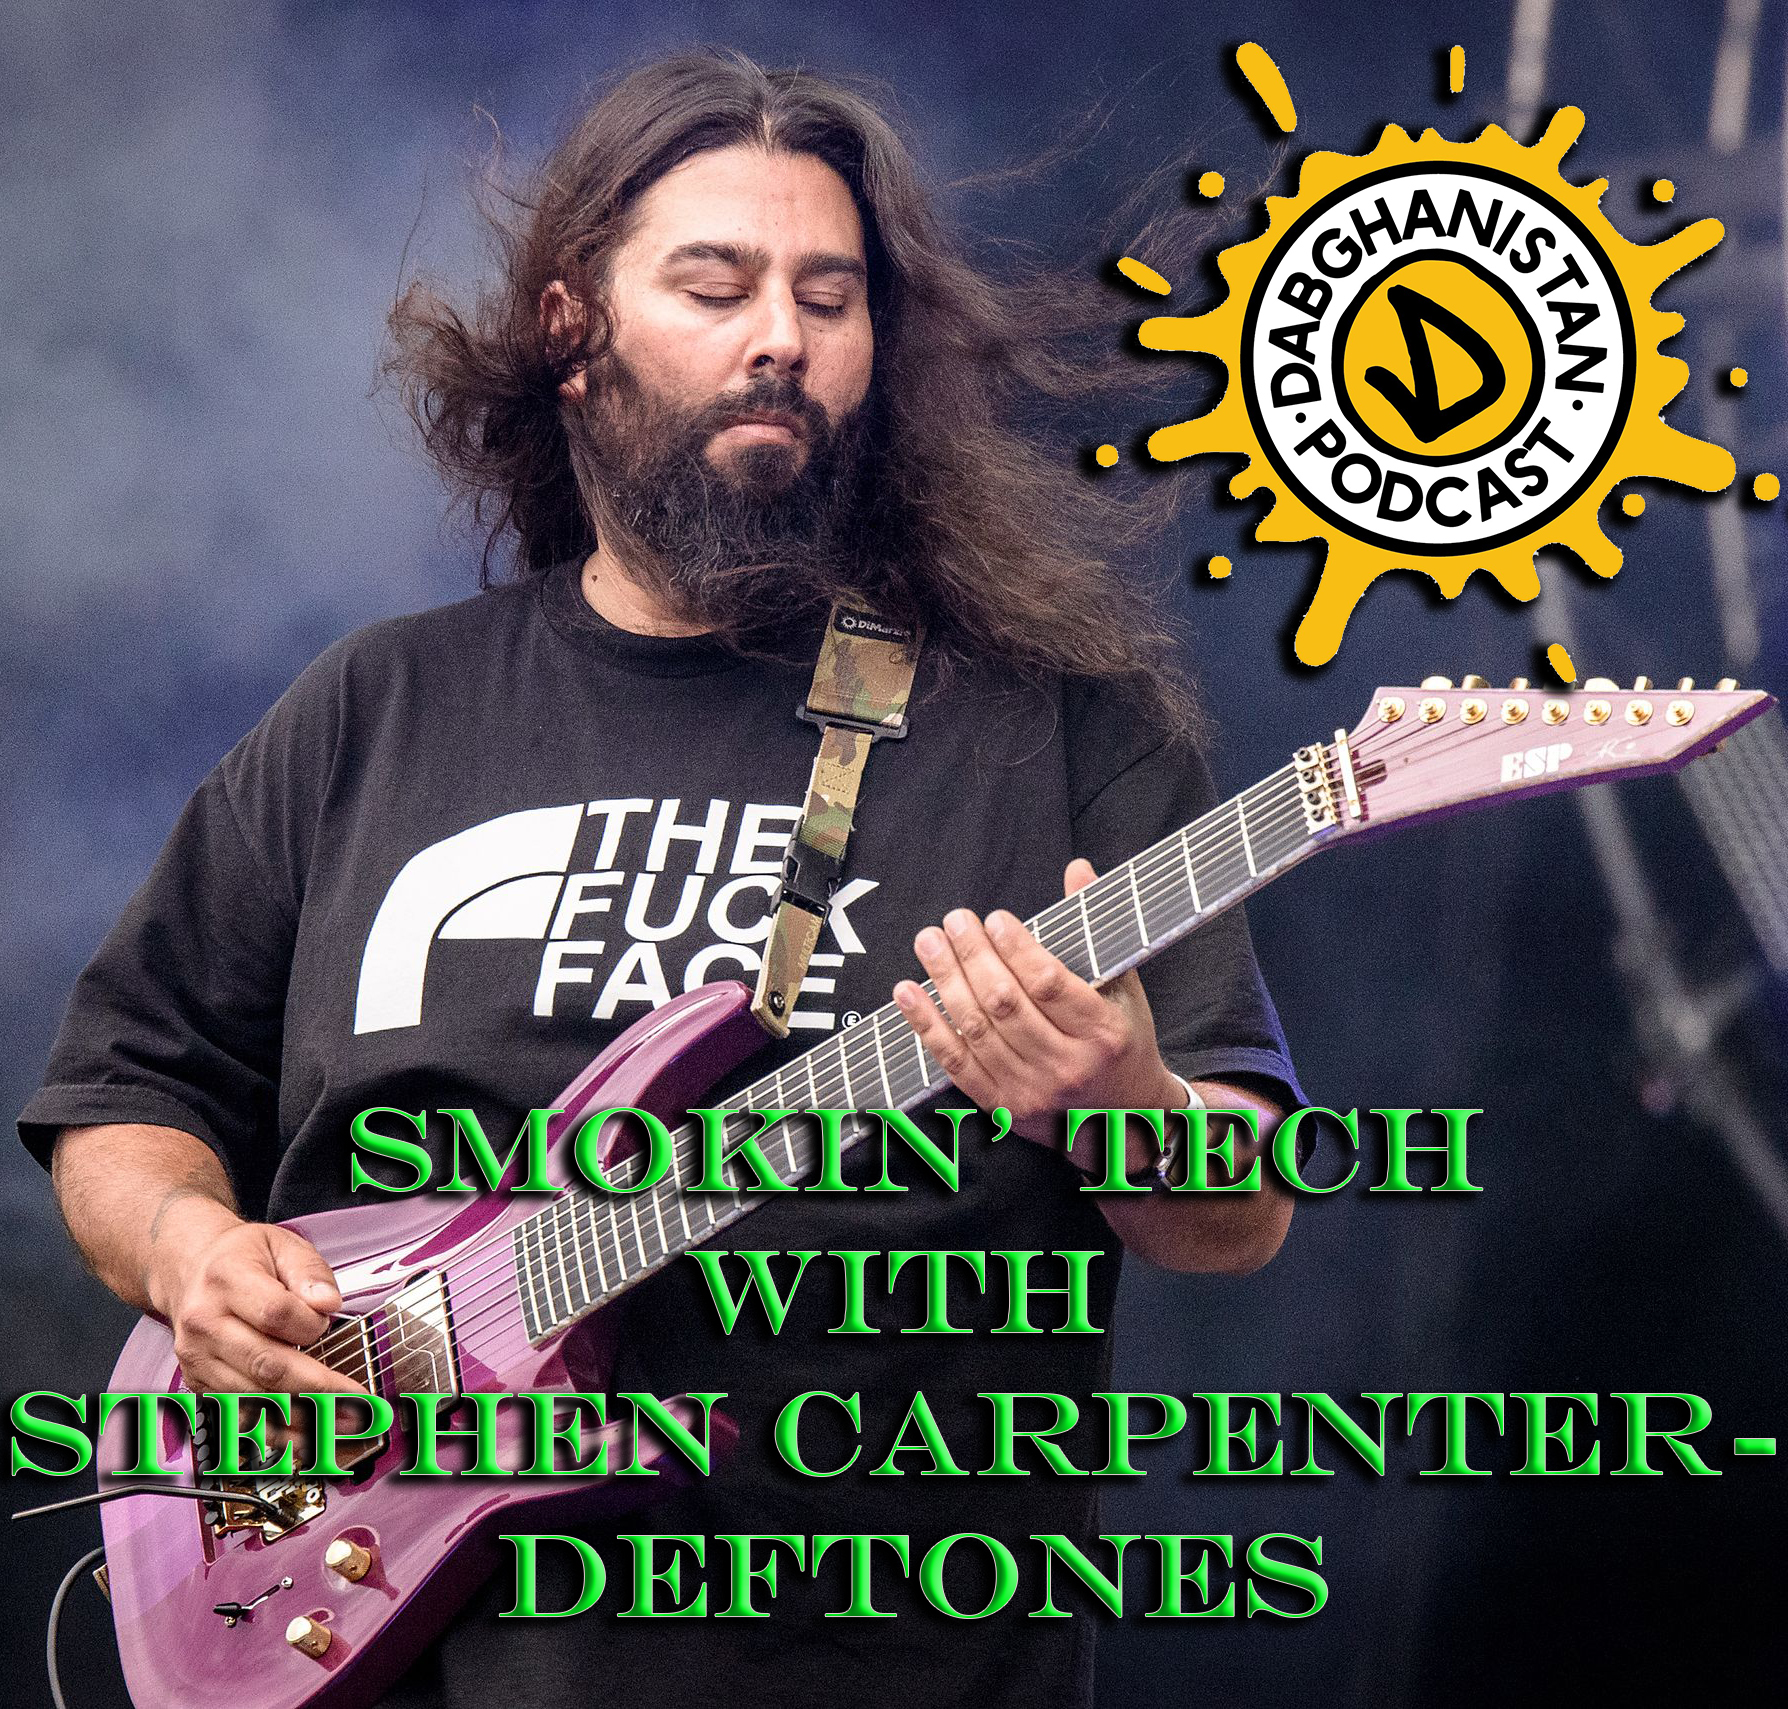 E10 : S1 Smokin Tech with Stephen 'Stef' Carpenter - Deftones